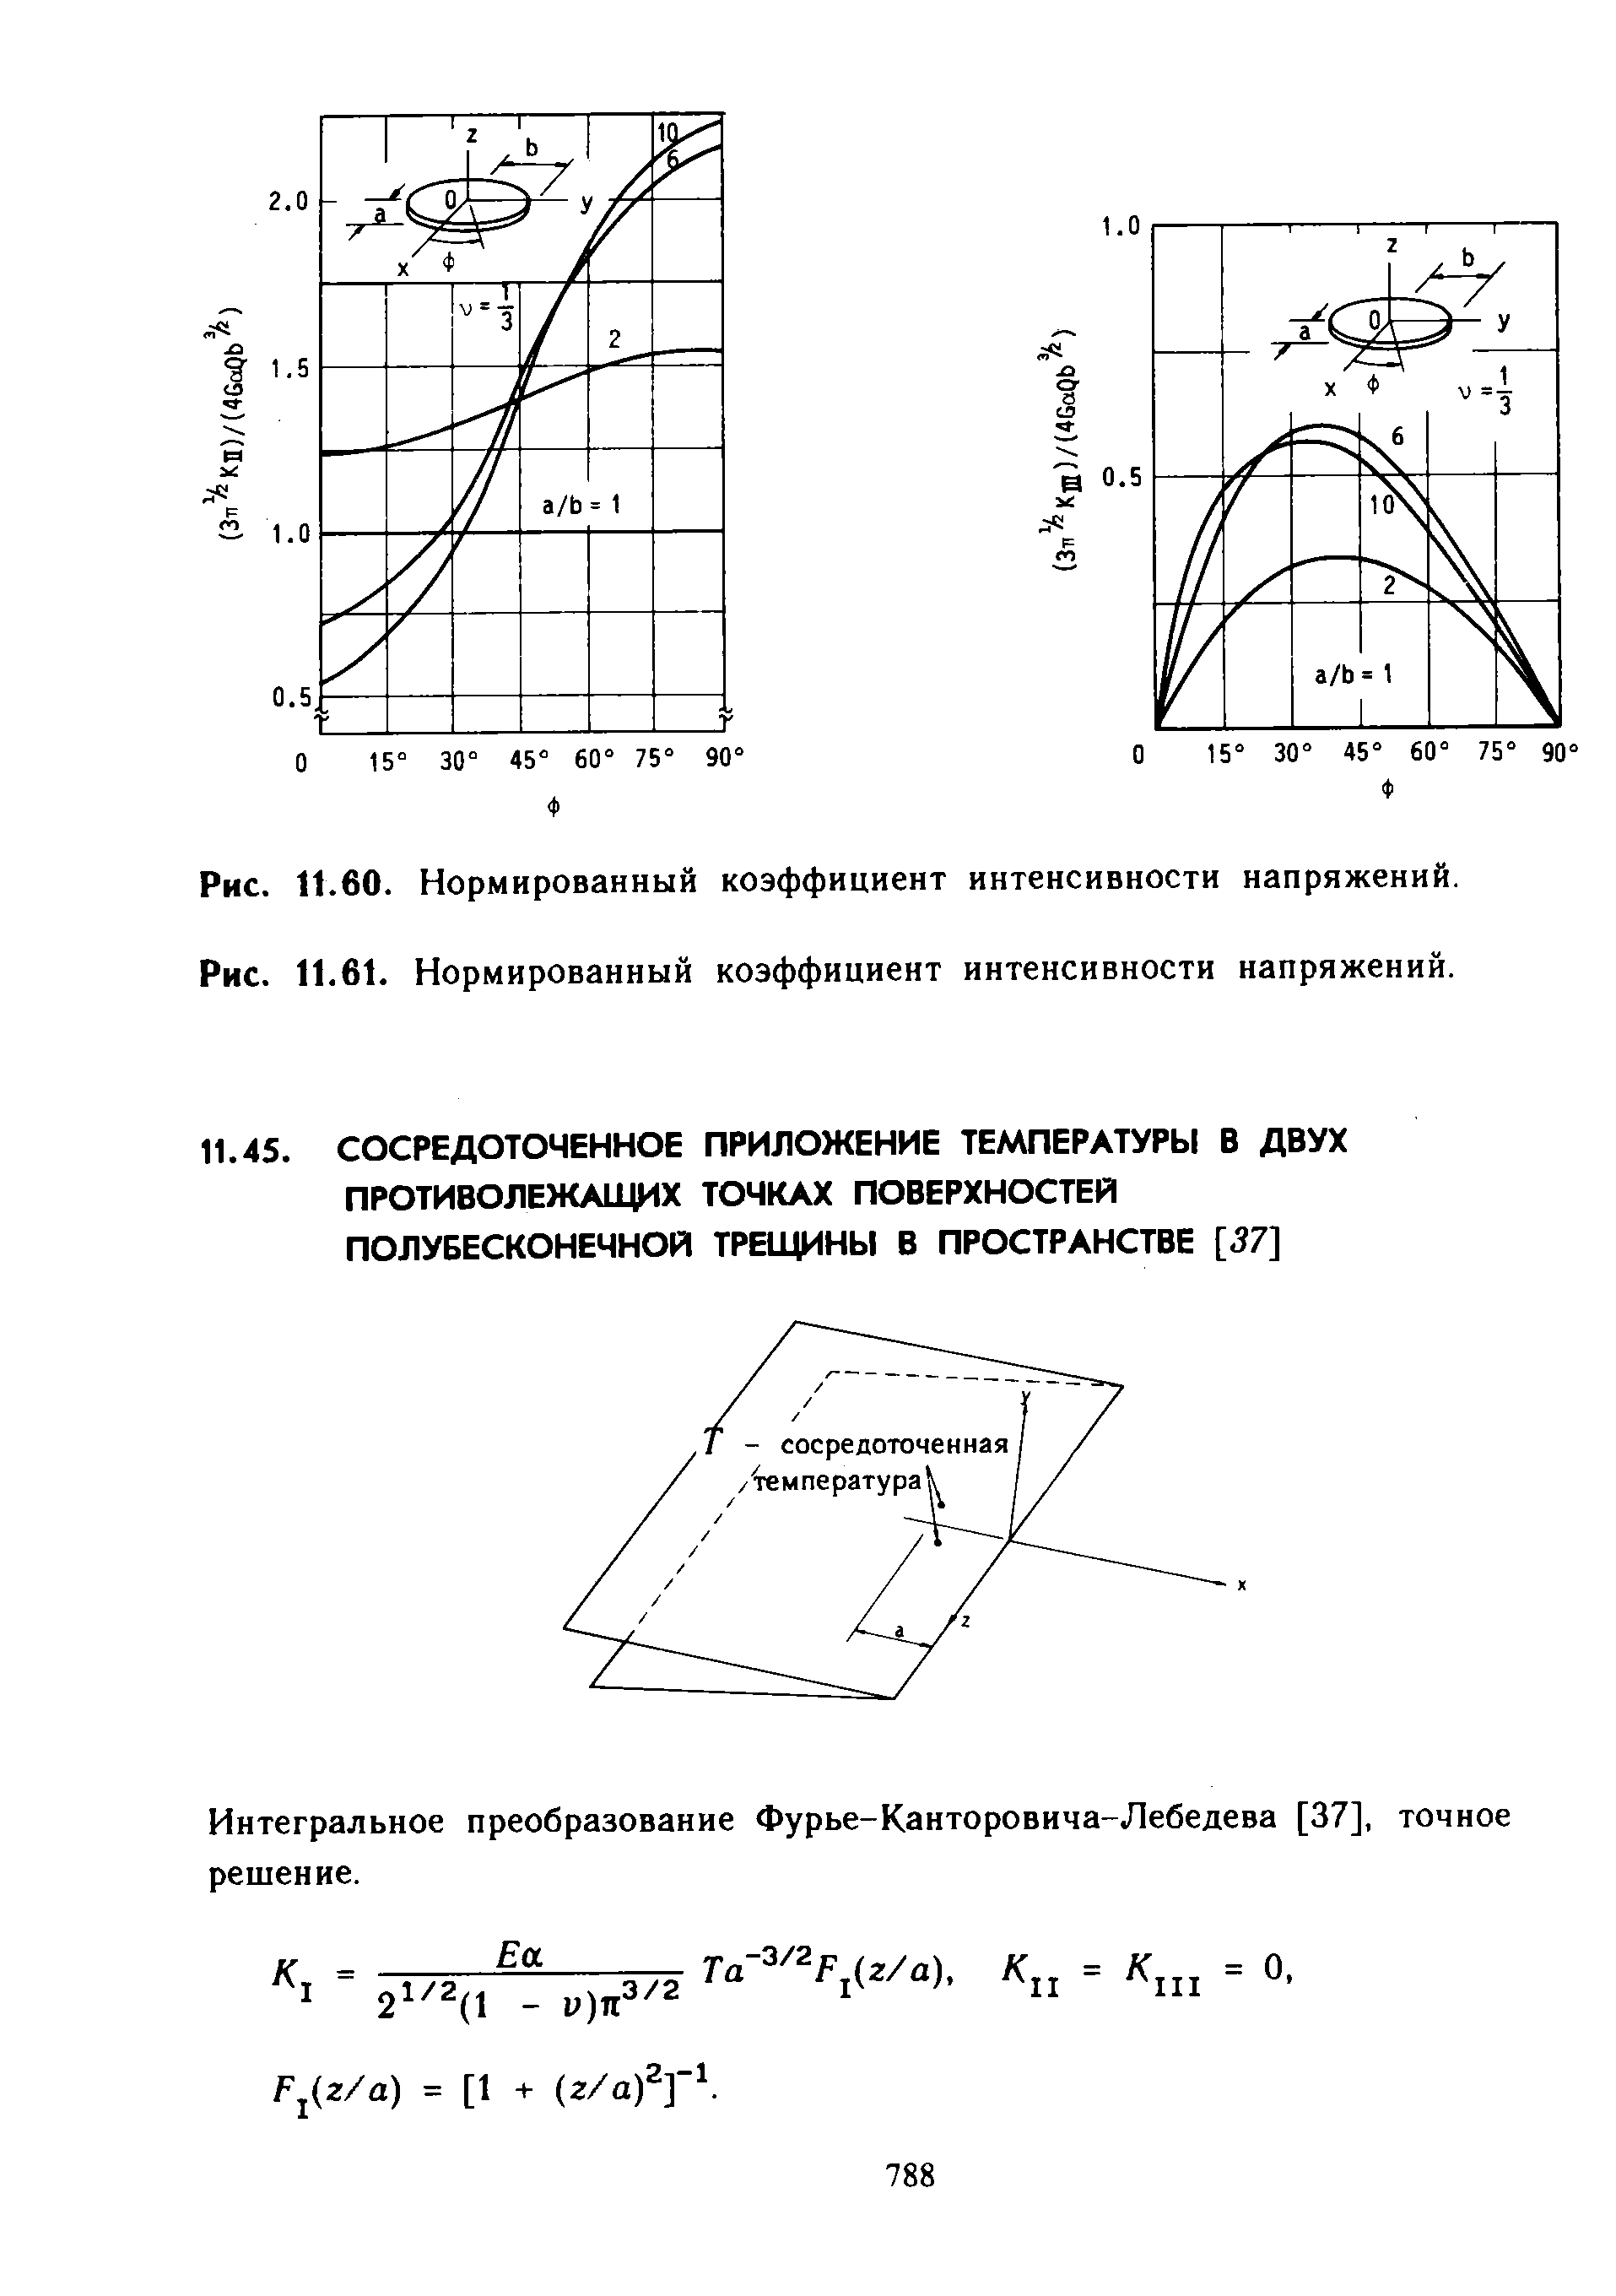 Интегральное преобразование Фурье-Канторовича-Лебедева [37], точное решение.
